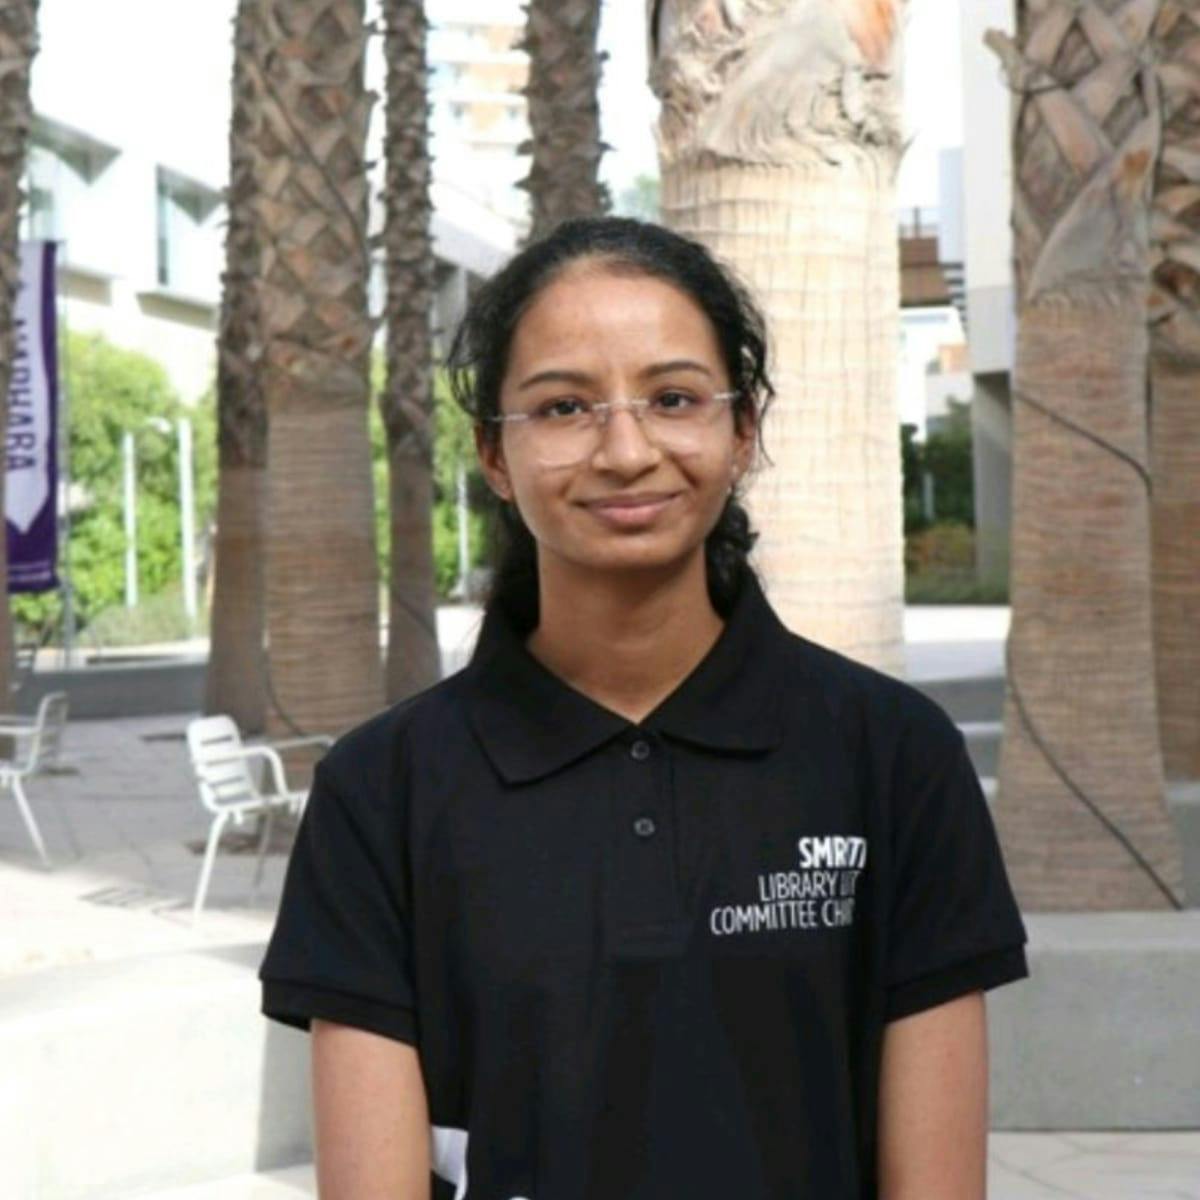 Studying at NYU Abu Dhabi as an Econ major